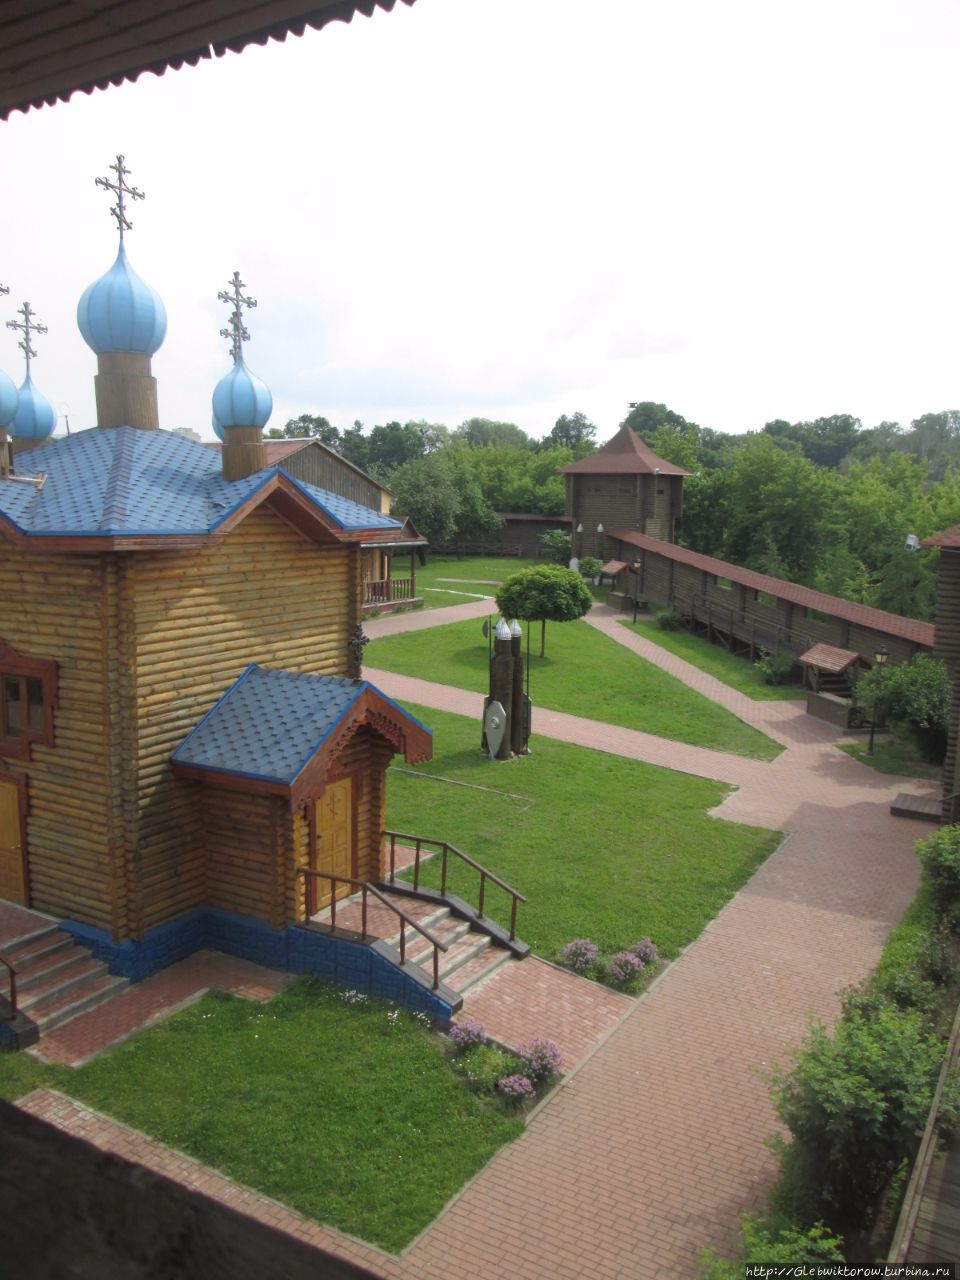 Посещение мозырского замка Мозырь, Беларусь